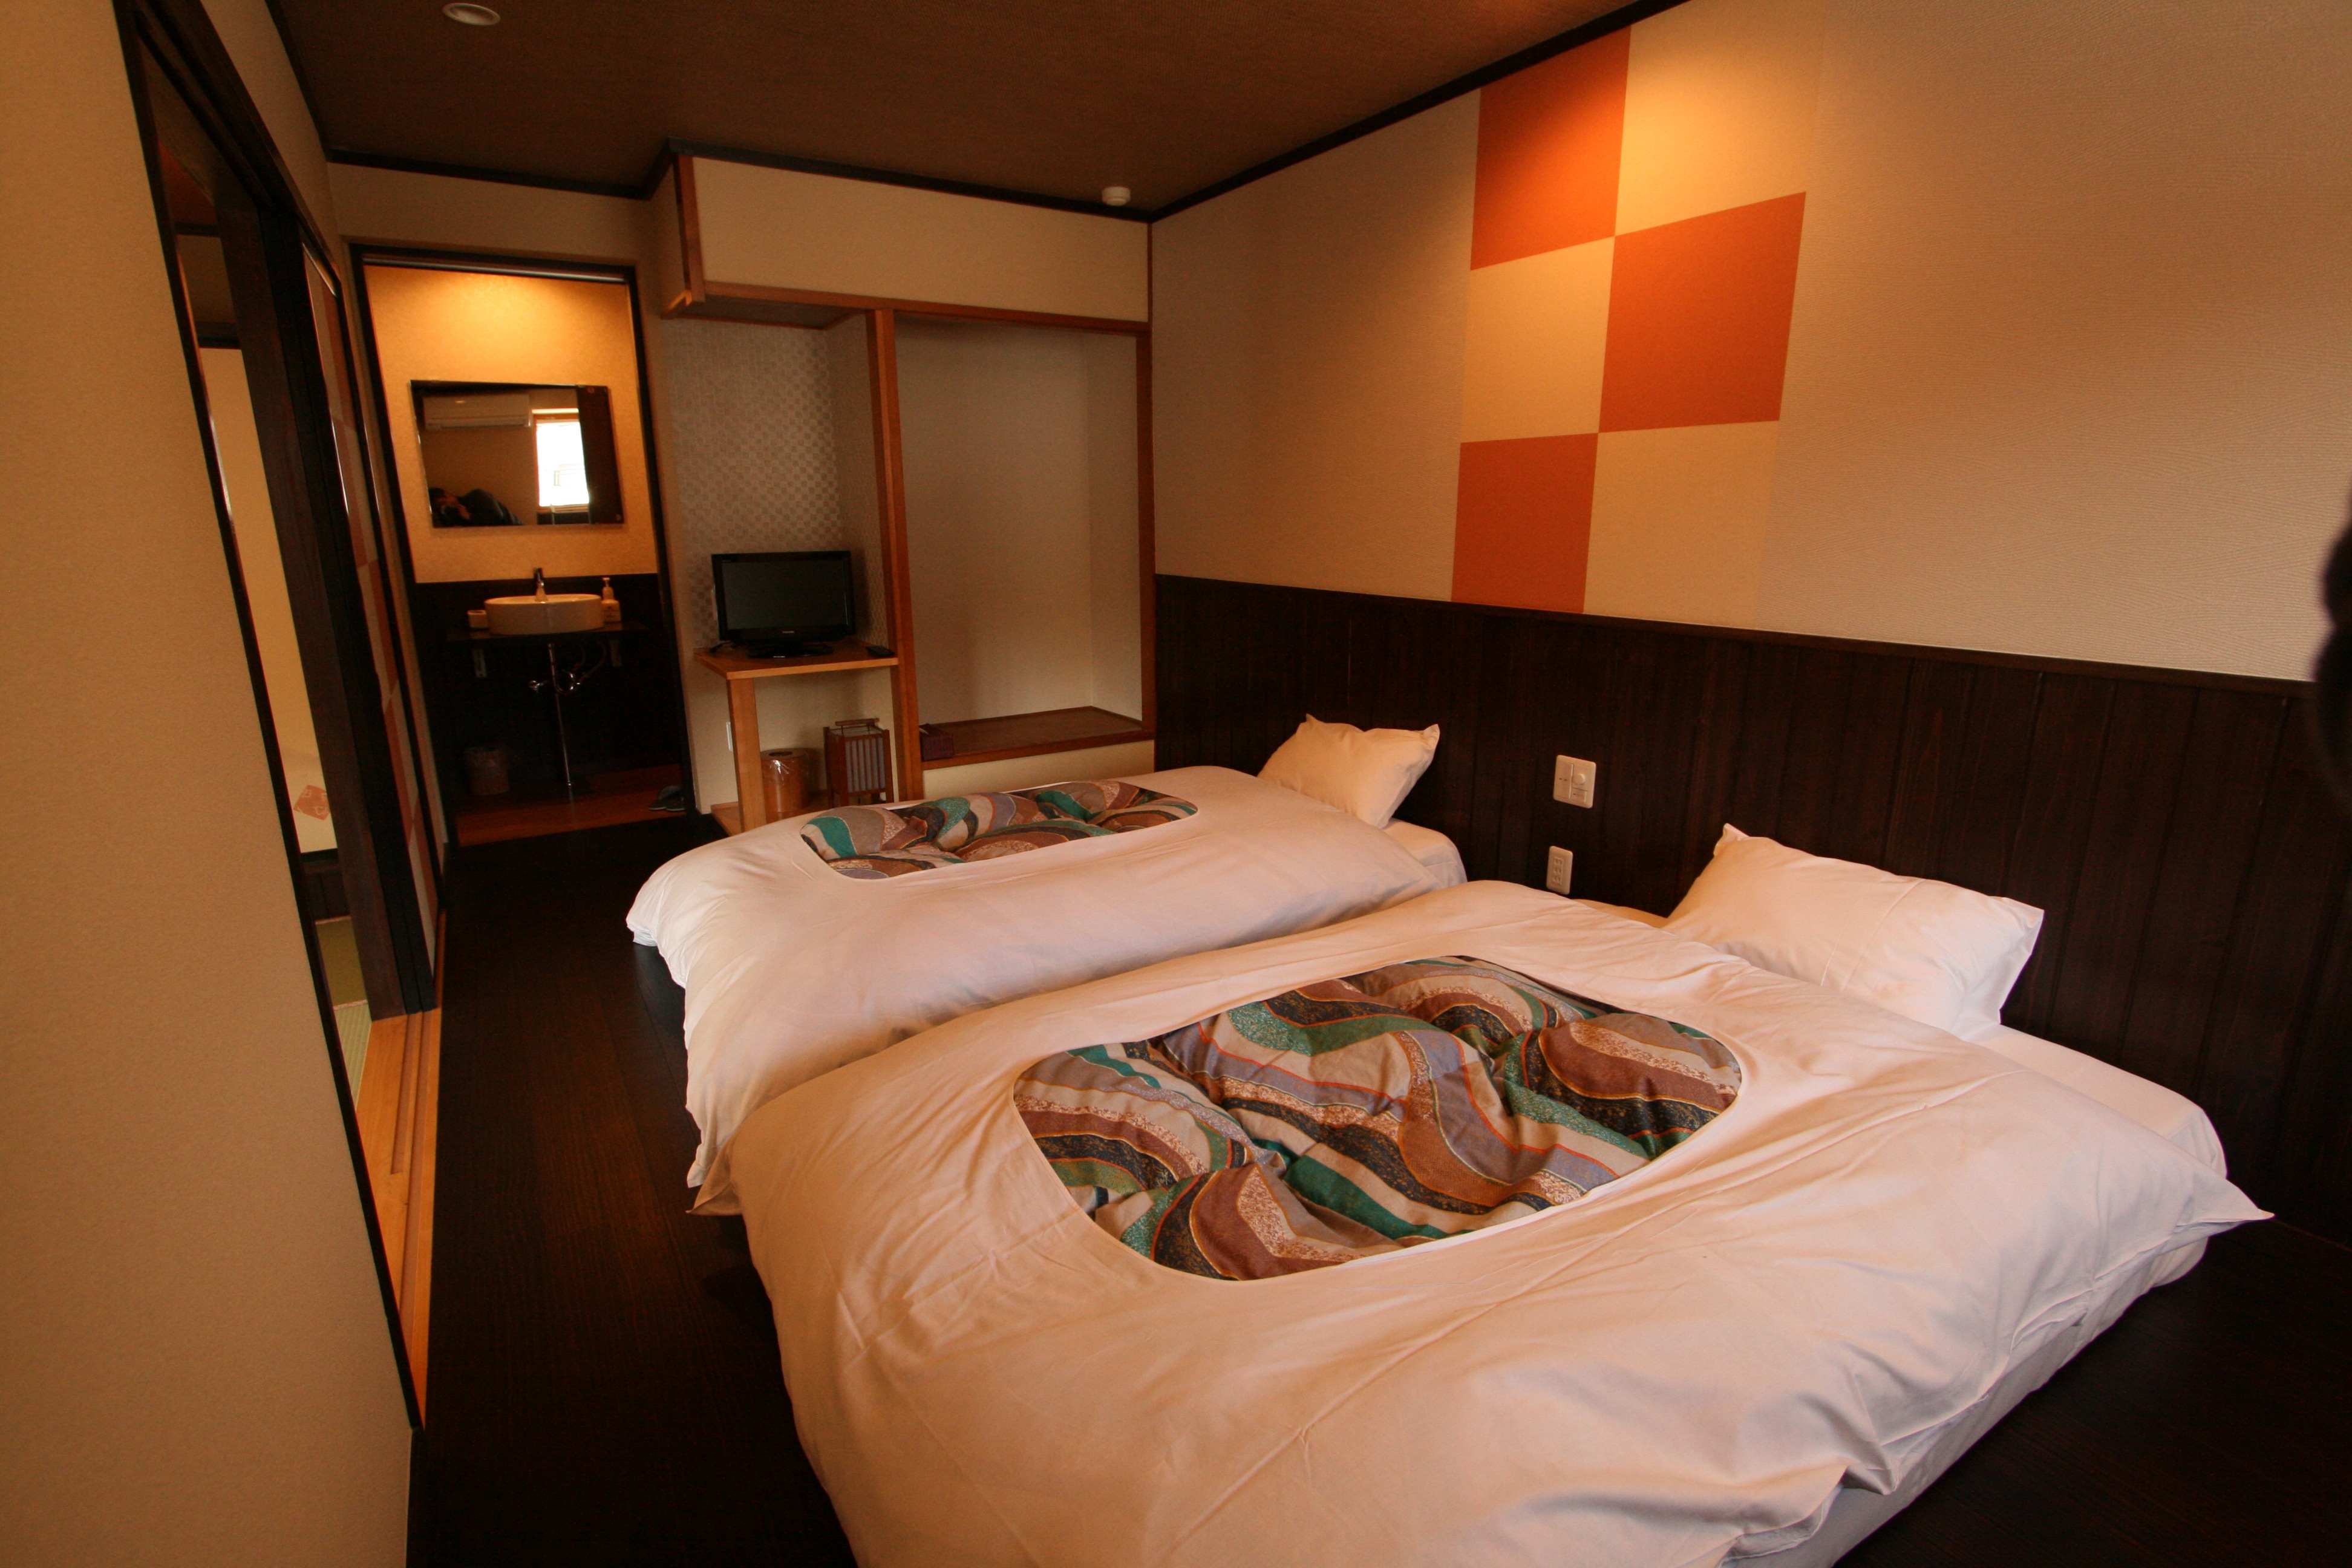 ก่อตั้งขึ้นใหม่ในเดือนมกราคม R4! เตียงต่ำแฝด + เสื่อทาทามิ 14 เสื่อ Kotatsu ห้องสไตล์ญี่ปุ่นสมัยใหม่ [ห้องพิเศษเฉพาะชั้น 2 เท่านั้น] 2 ห้องน้ำและ 2 อ่างล้างหน้า